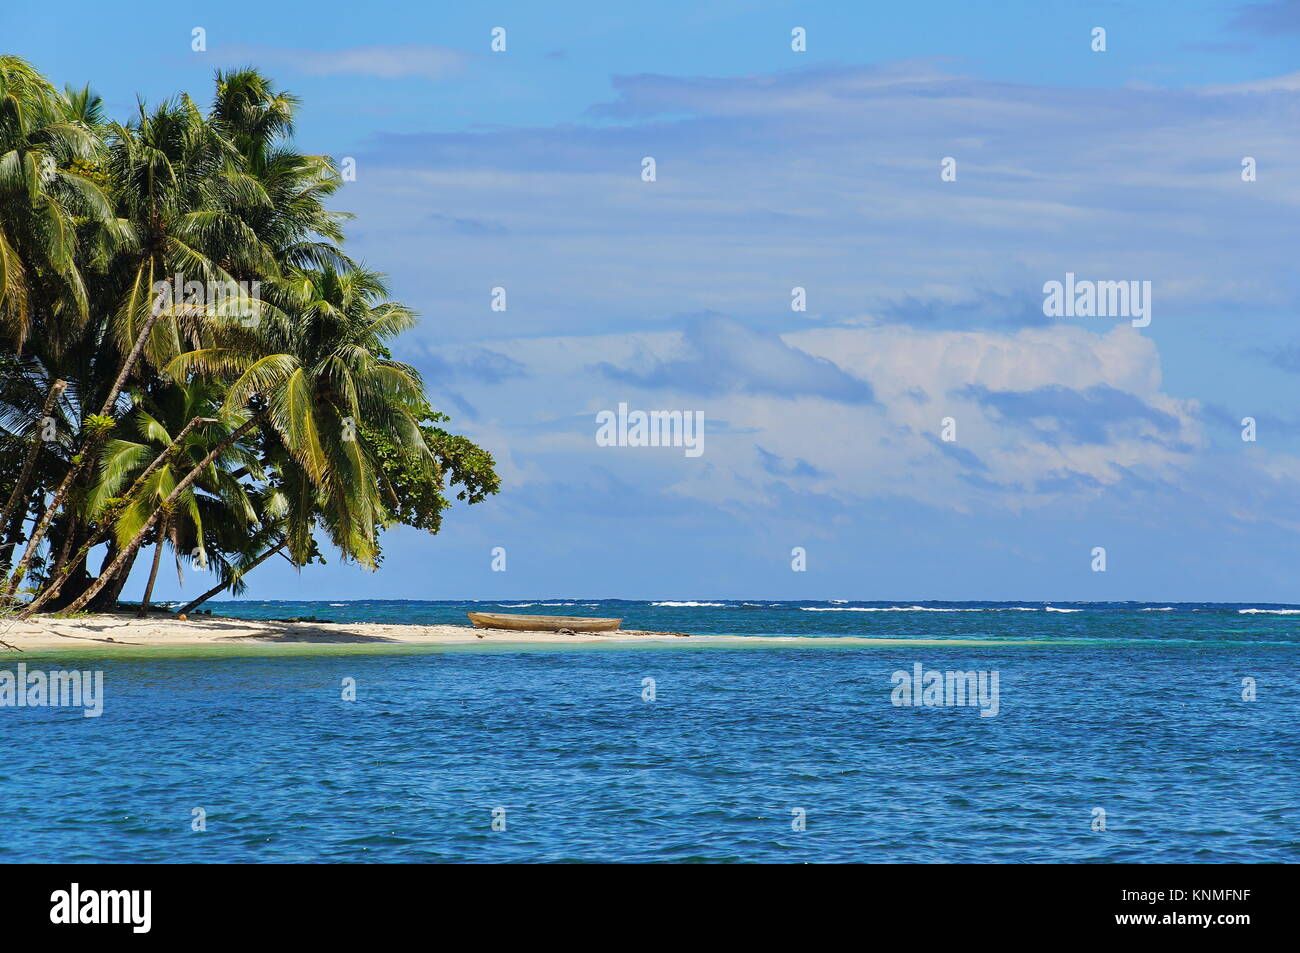 Isola tropicale con inclinazione palme di cocco e un di legno piroga sulla spiaggia e il mare dei Caraibi, Bocas del Toro, Panama America Centrale Foto Stock